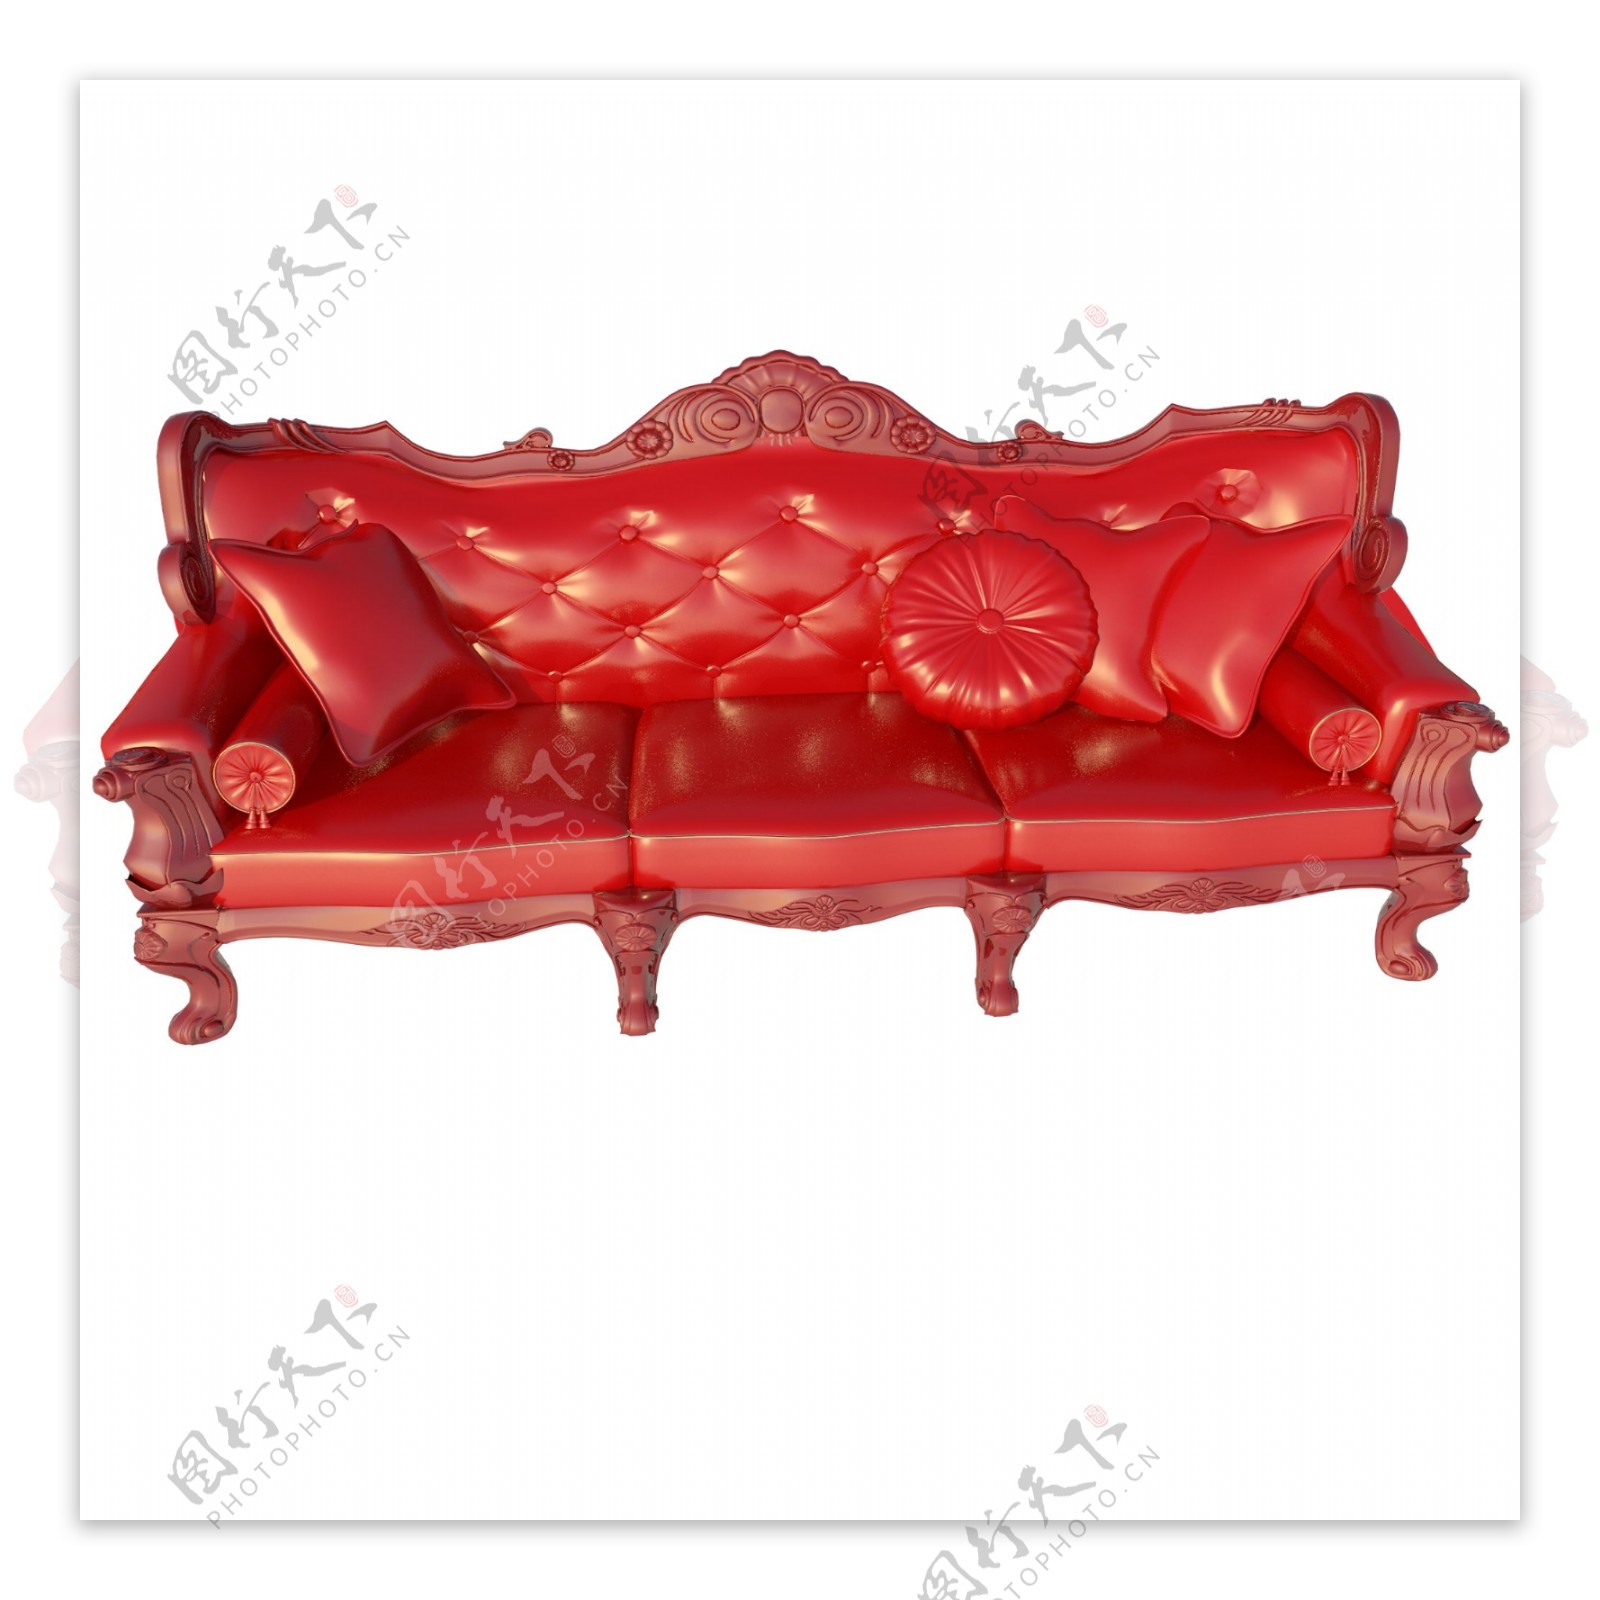 大红色沙发